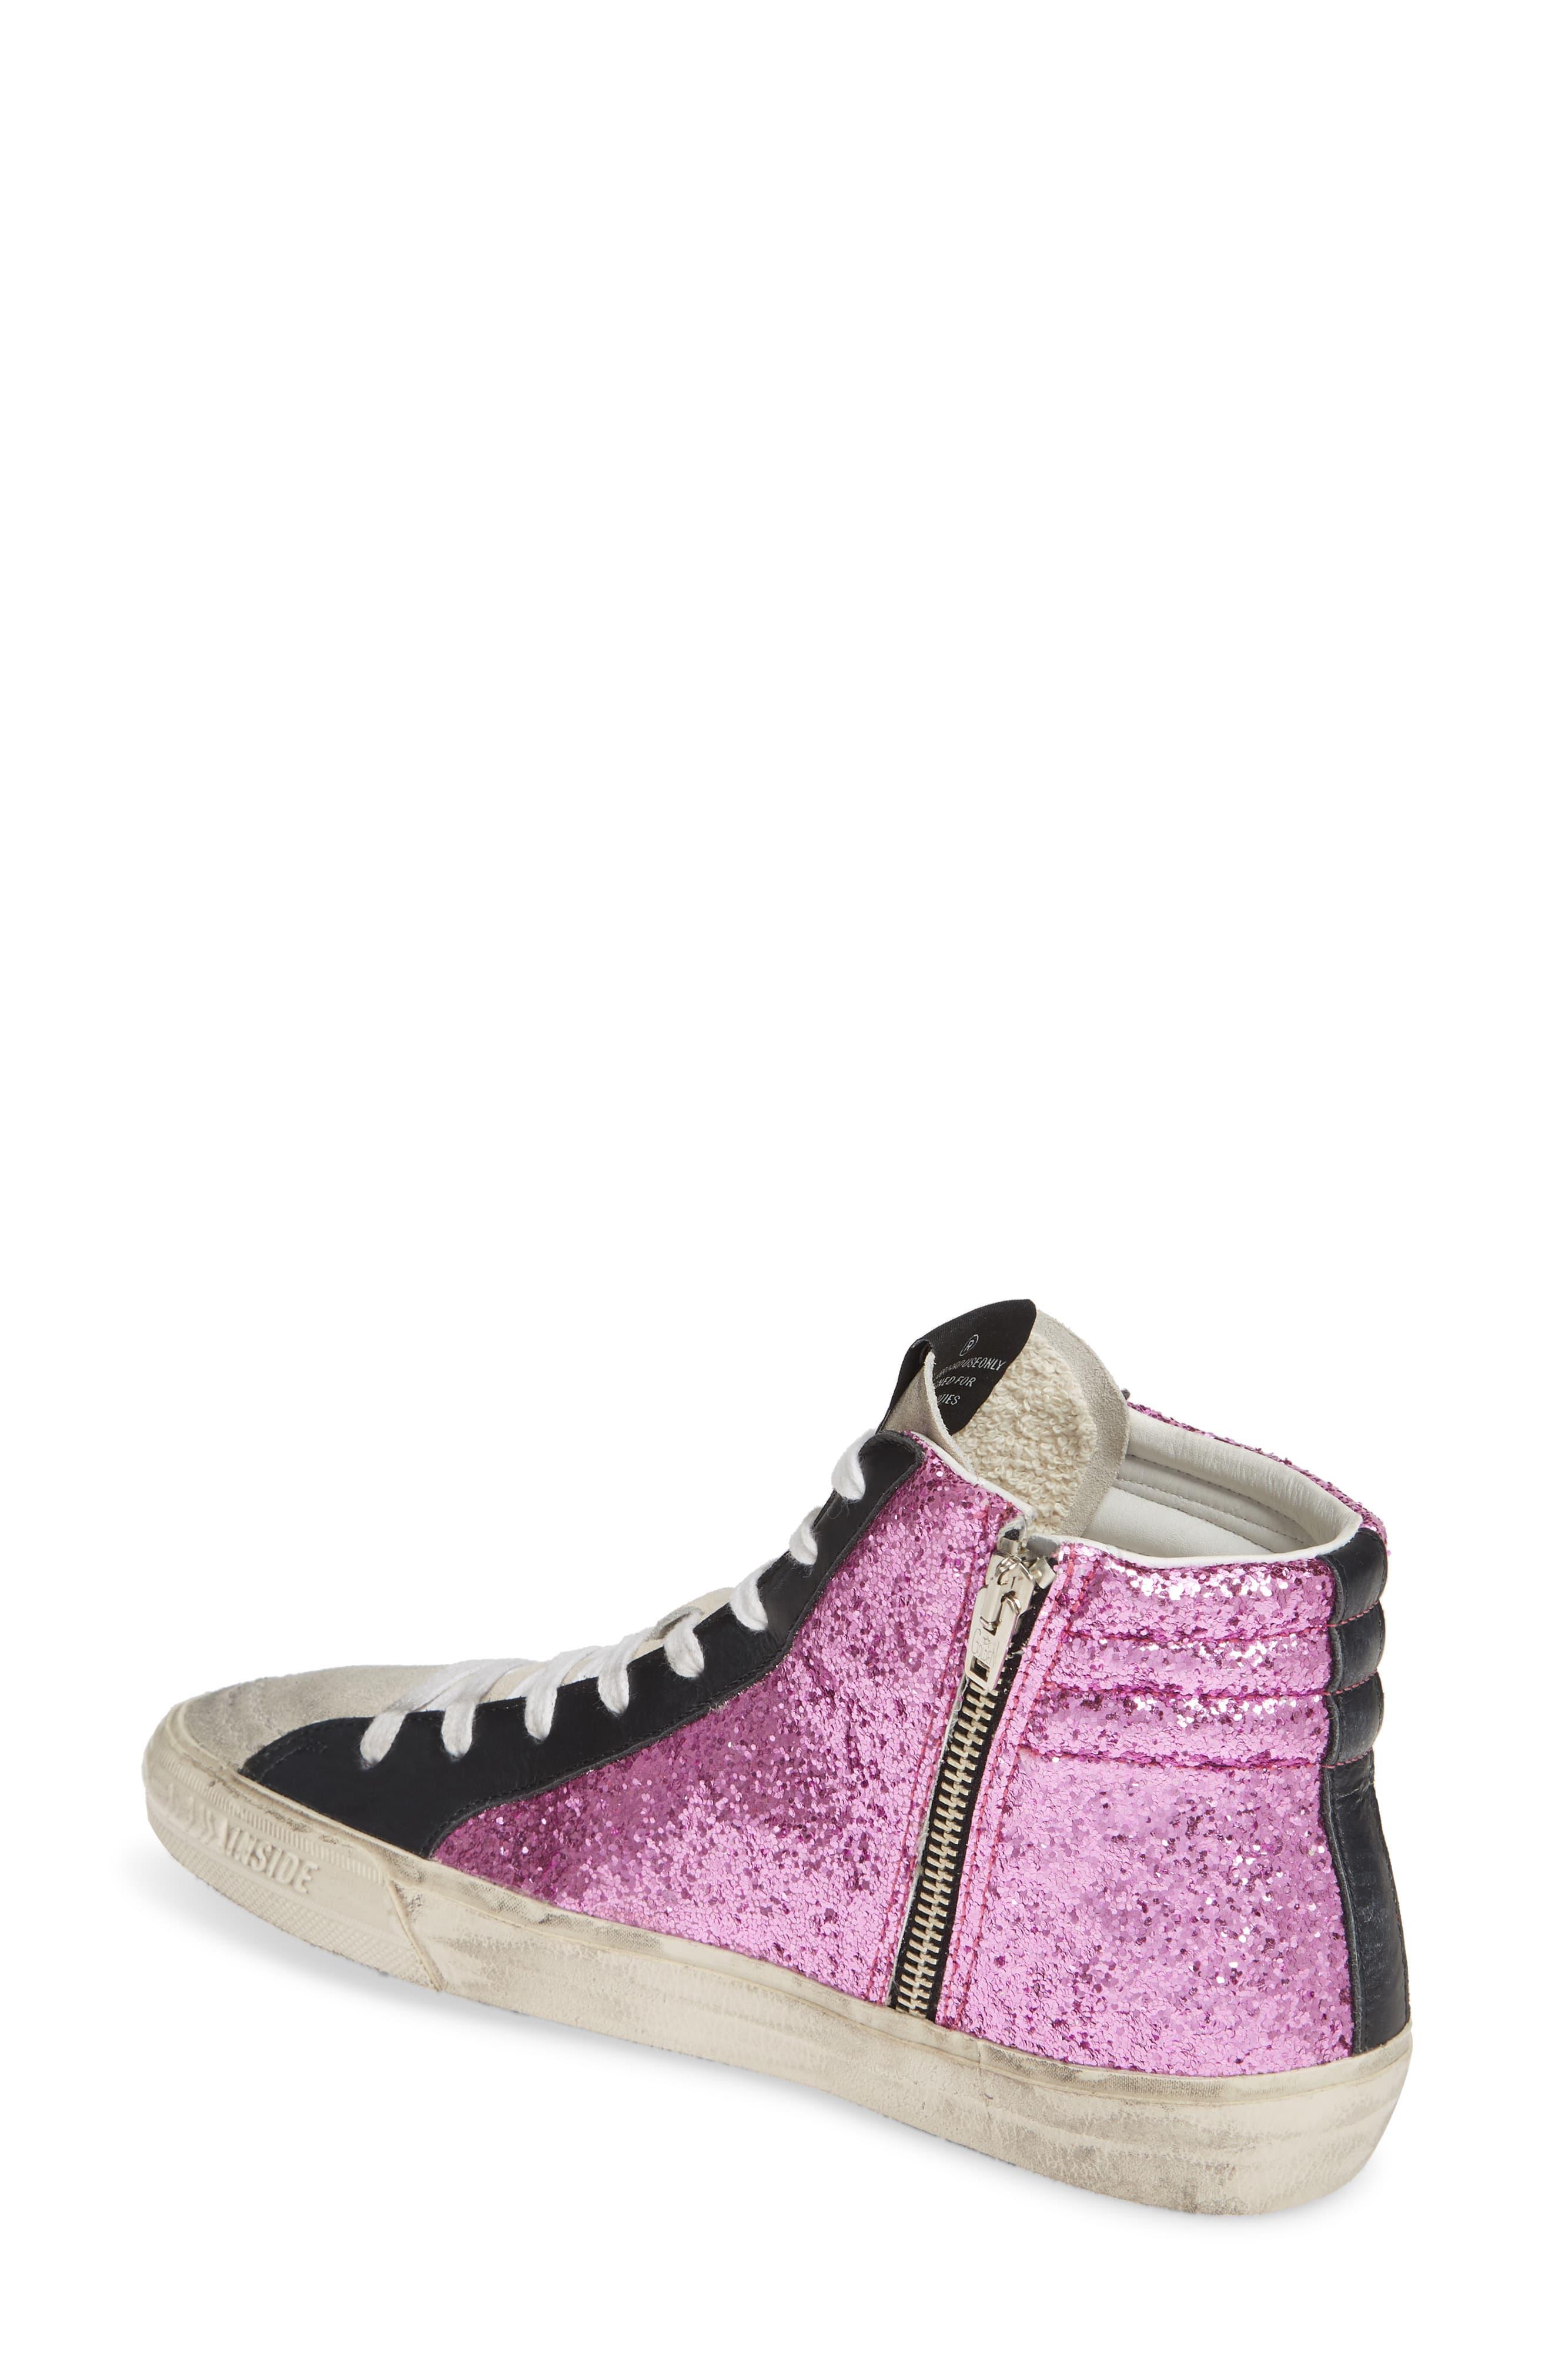 Golden Goose Deluxe Brand Slide Sequin High Top Sneaker in Pink Glitter ...